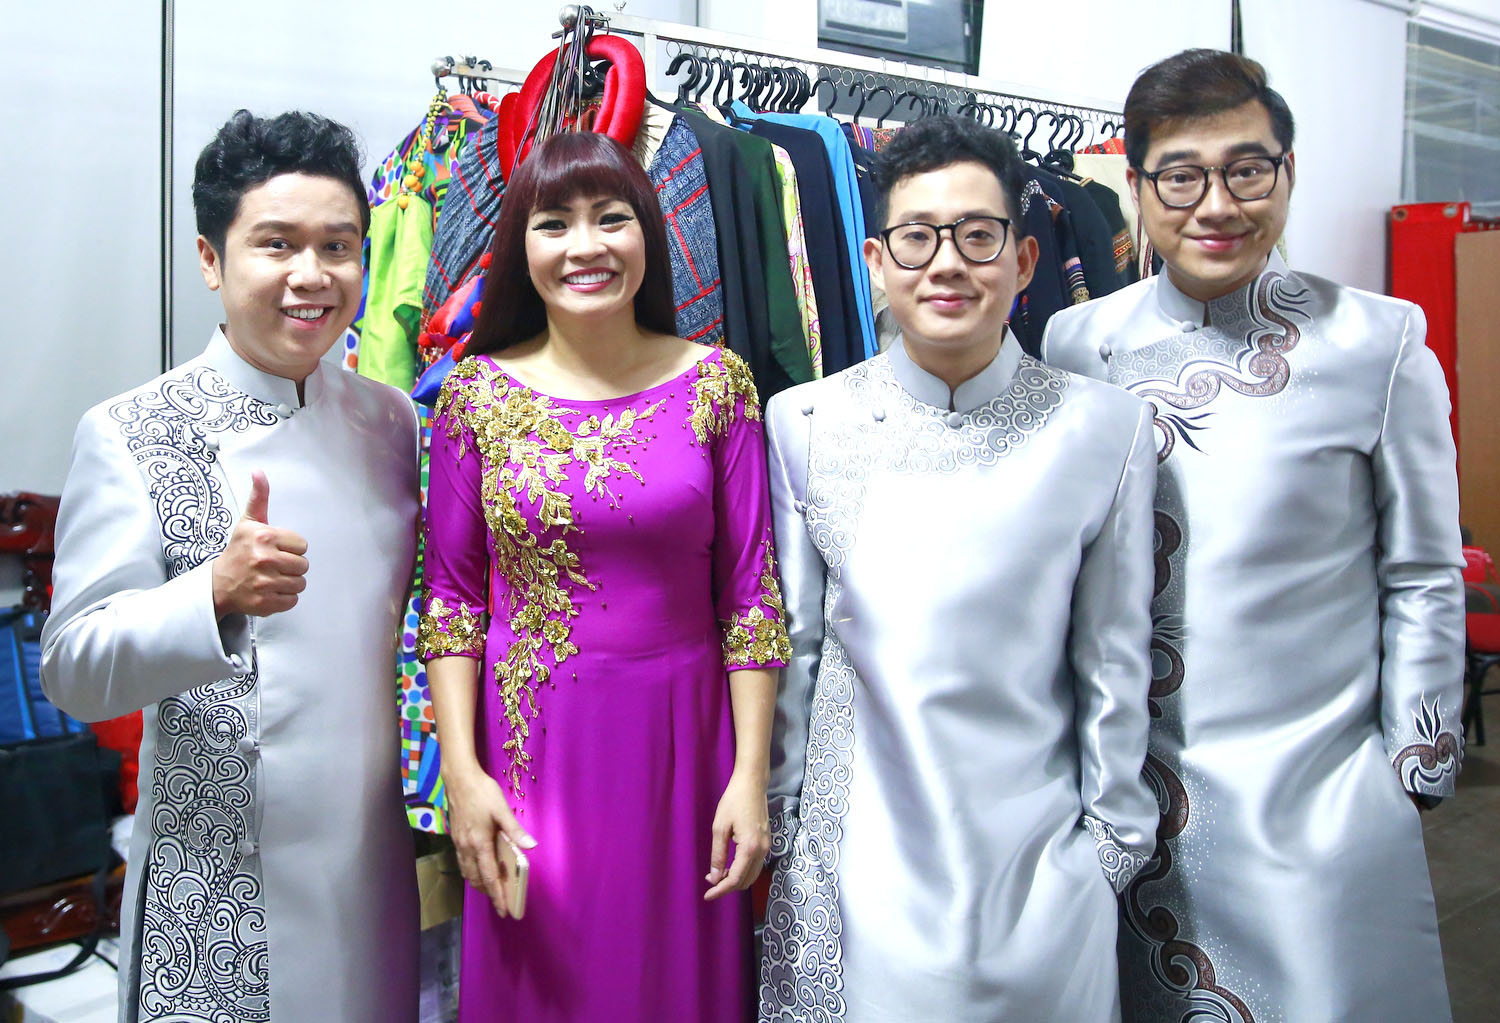 Ca sĩ Phương Thanh cùng 3 thí sinh của chương trình.